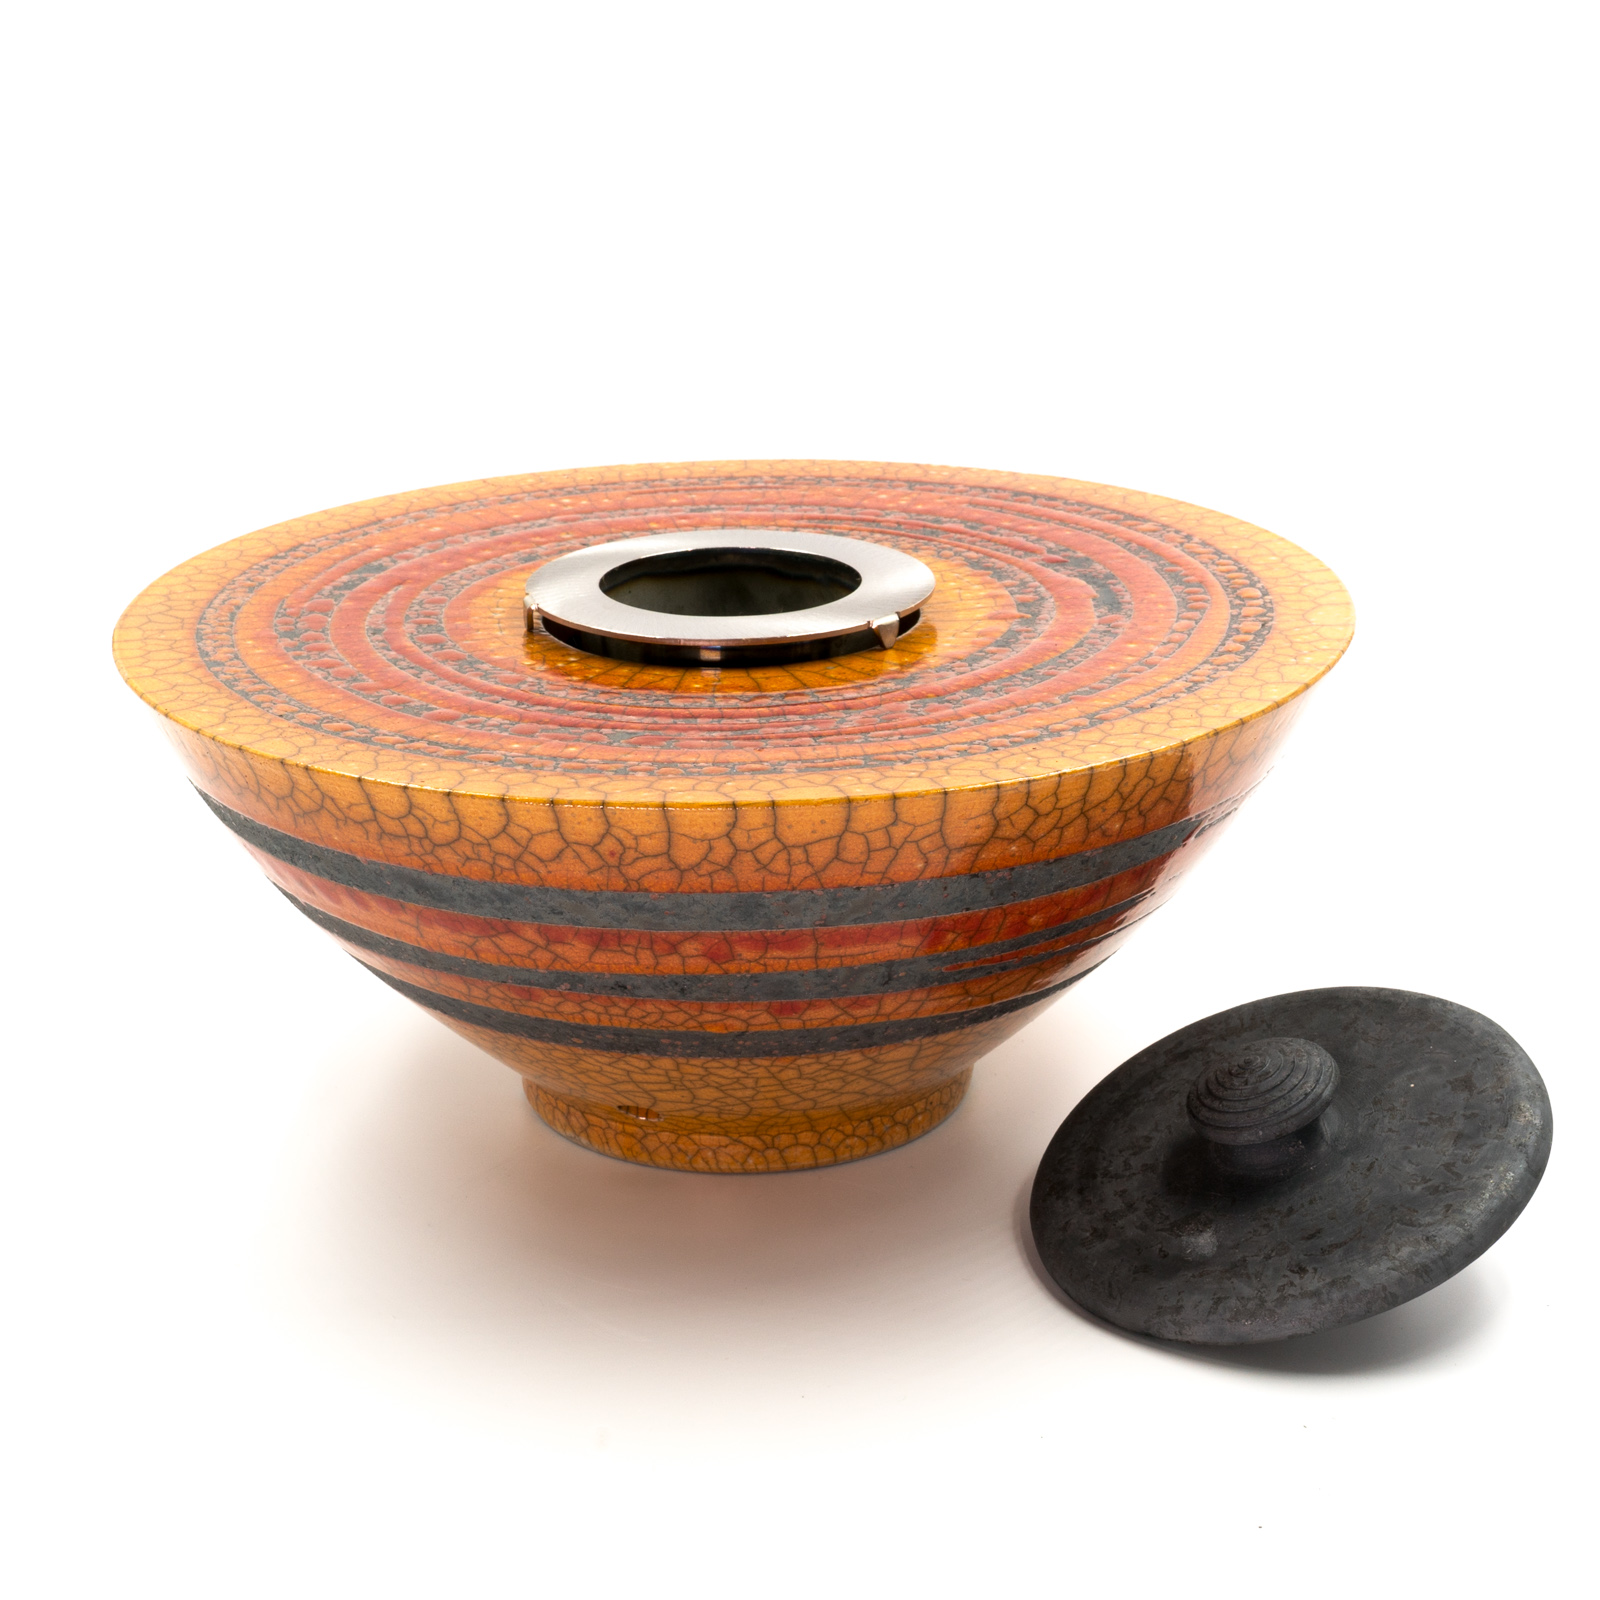 Feuerschale mit Sockel Keramik | Gartenfackel  | Flammschale mit Sockel rot/orange 120cm